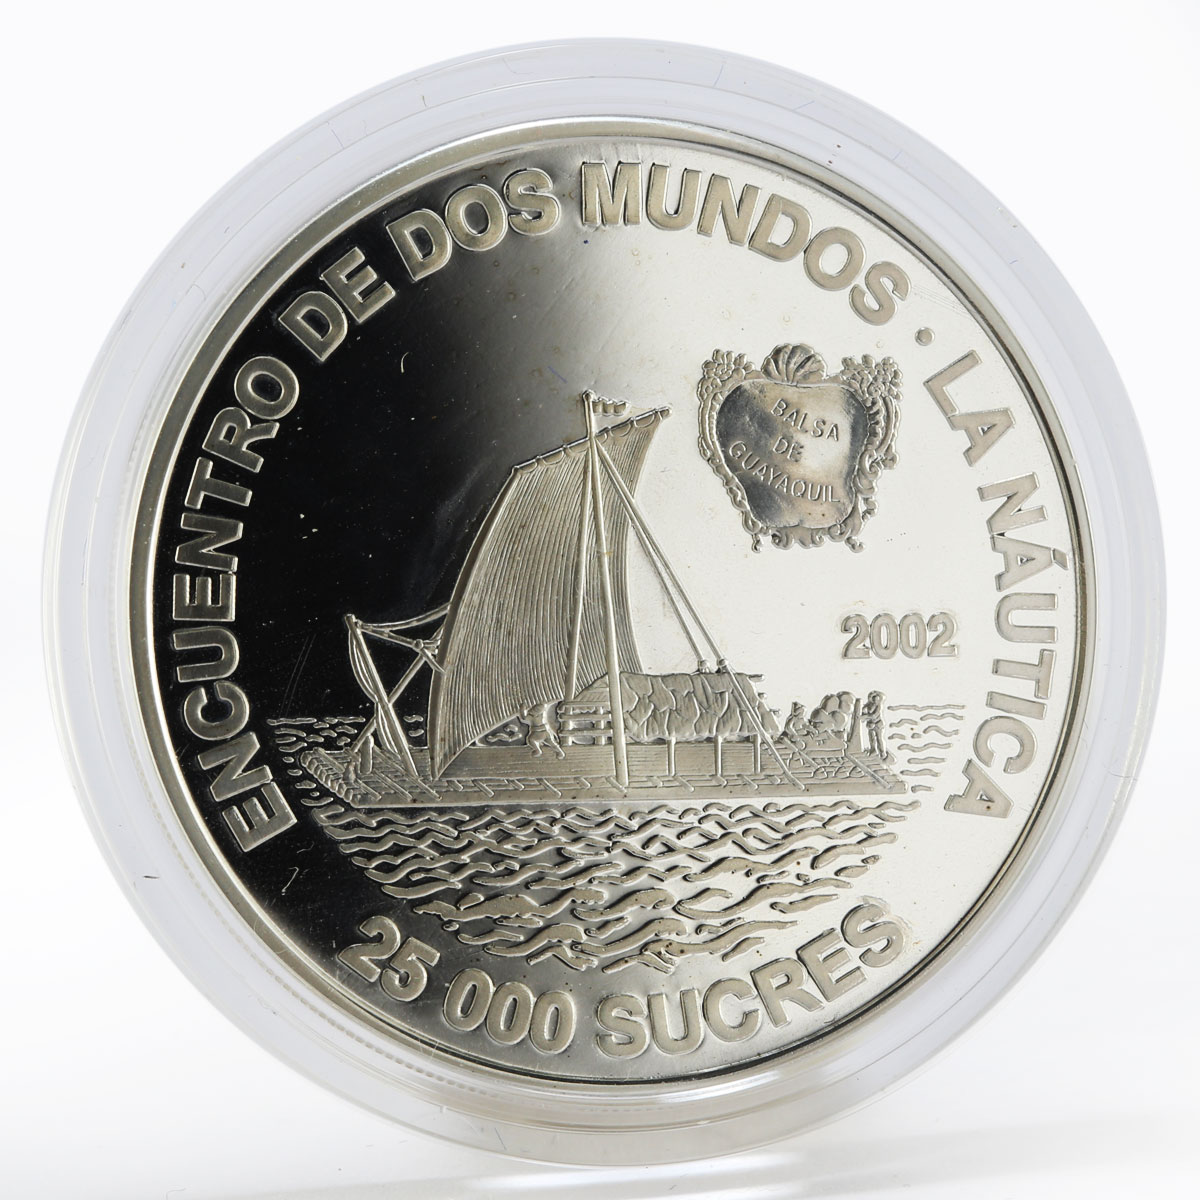 Ecuador 25000 sucres Sailing Raft Ship proof silver coin 2002